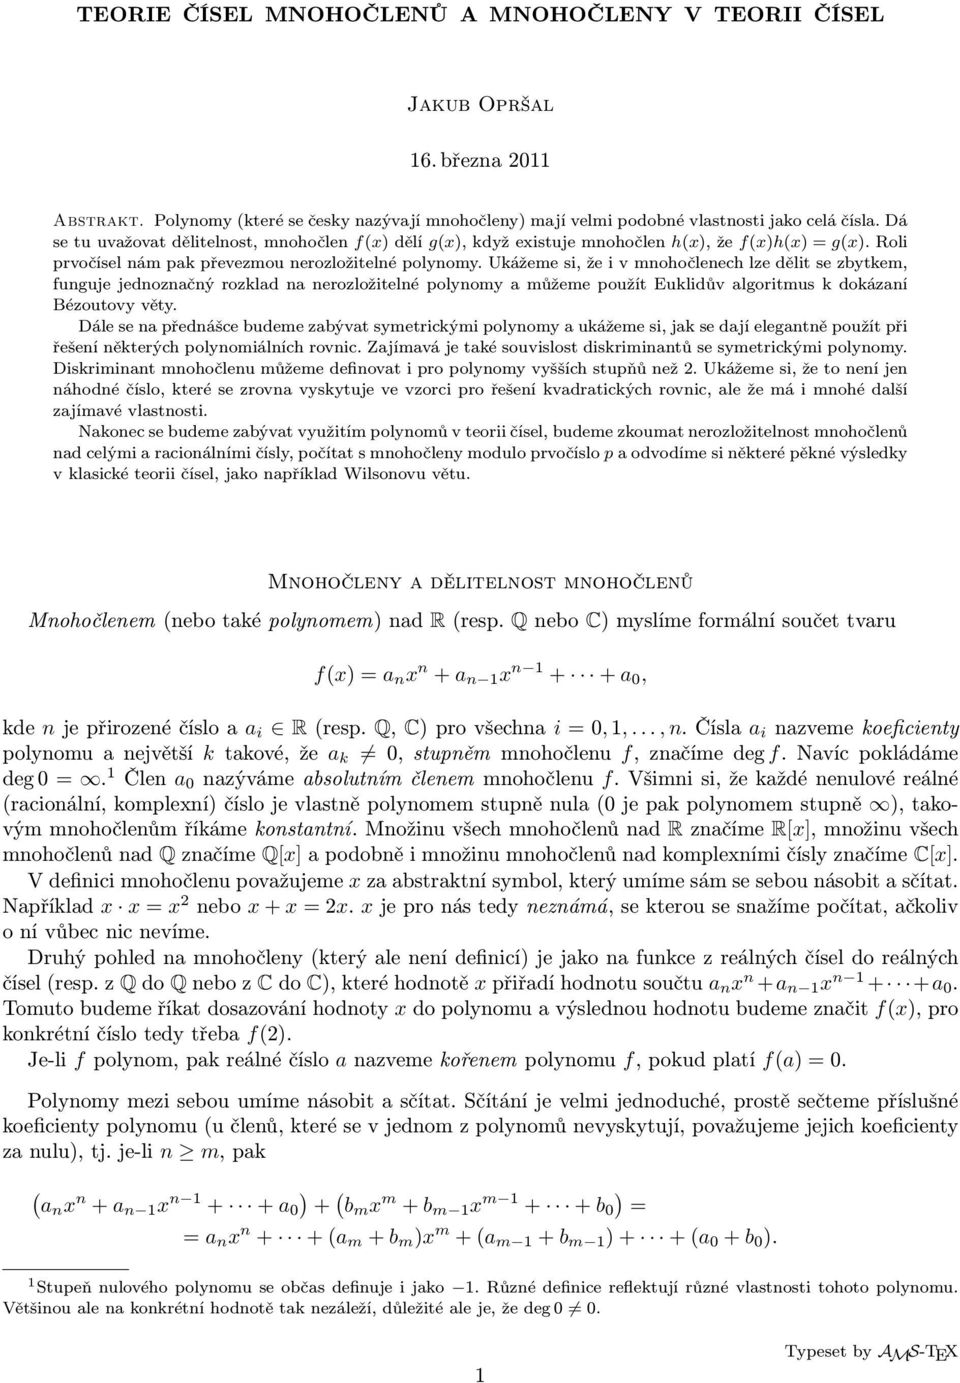 Ukážeme si, že i v mnohočlenech lze dělit se zbytkem, funguje jednoznačný rozklad na nerozložitelné polynomy a můžeme použít Euklidův algoritmus k dokázaní Bézoutovy věty.